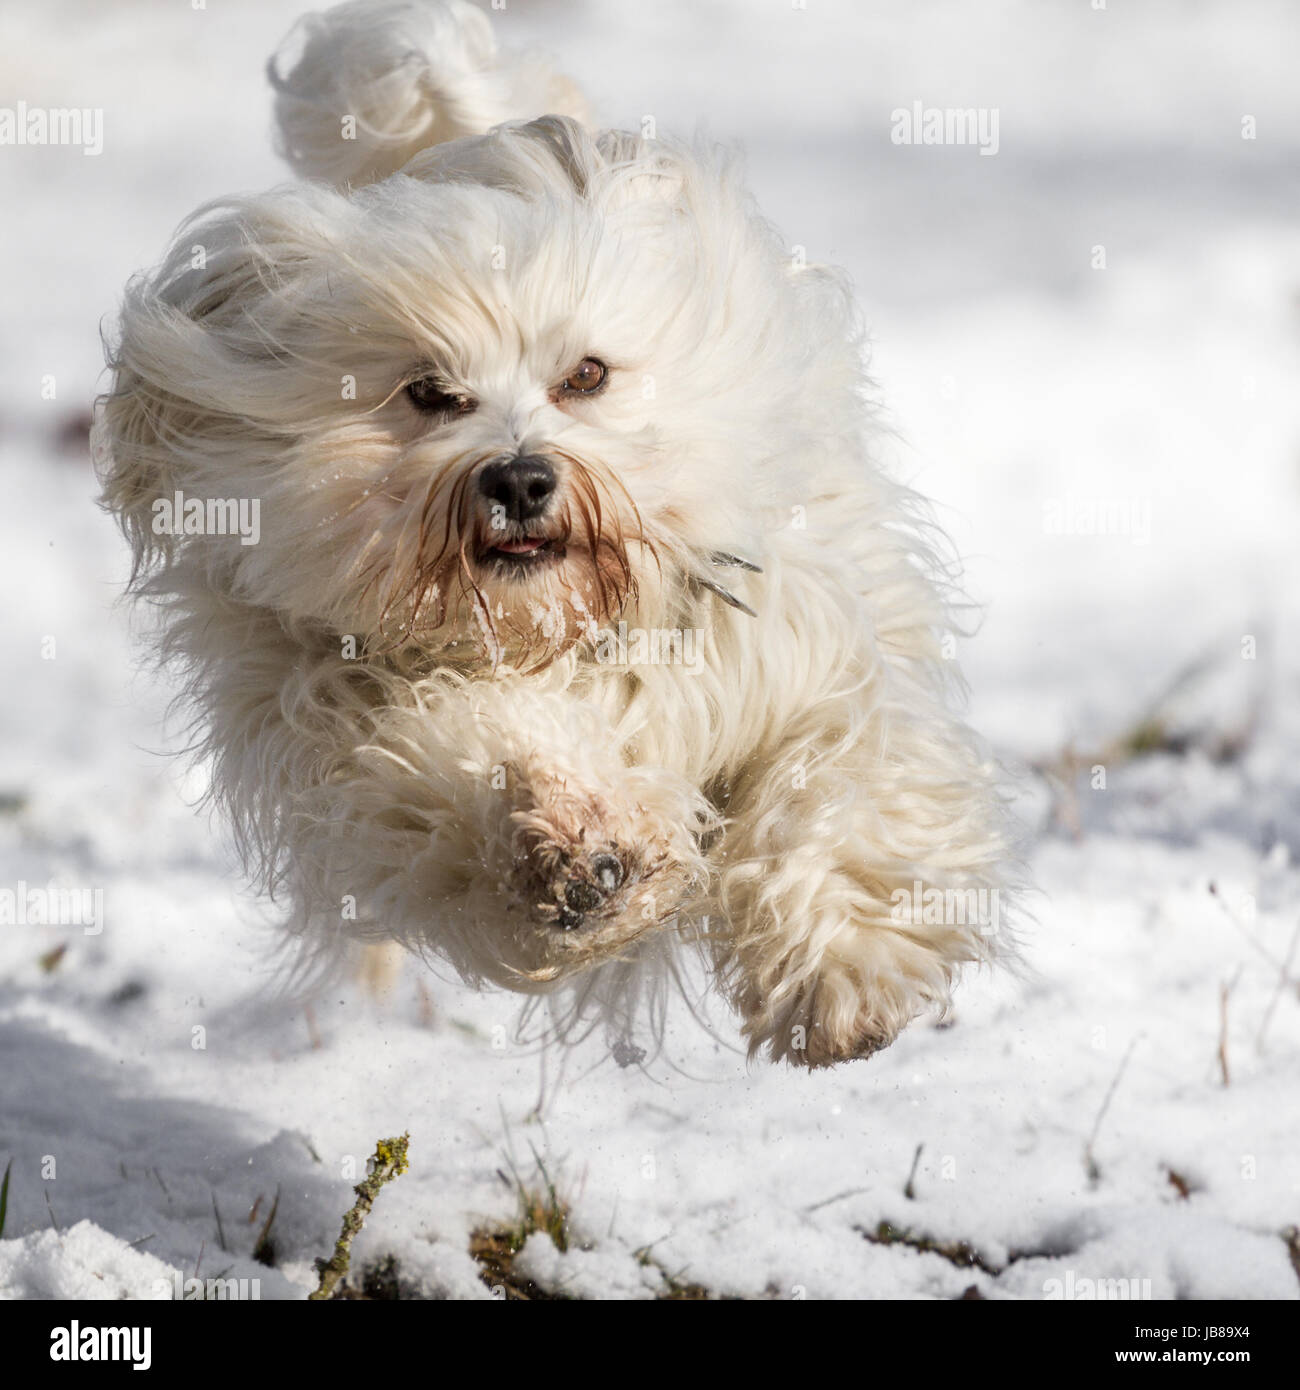 Ein Hund fliegt mit viel Spaß über den weißen Schnee. Stock Photo